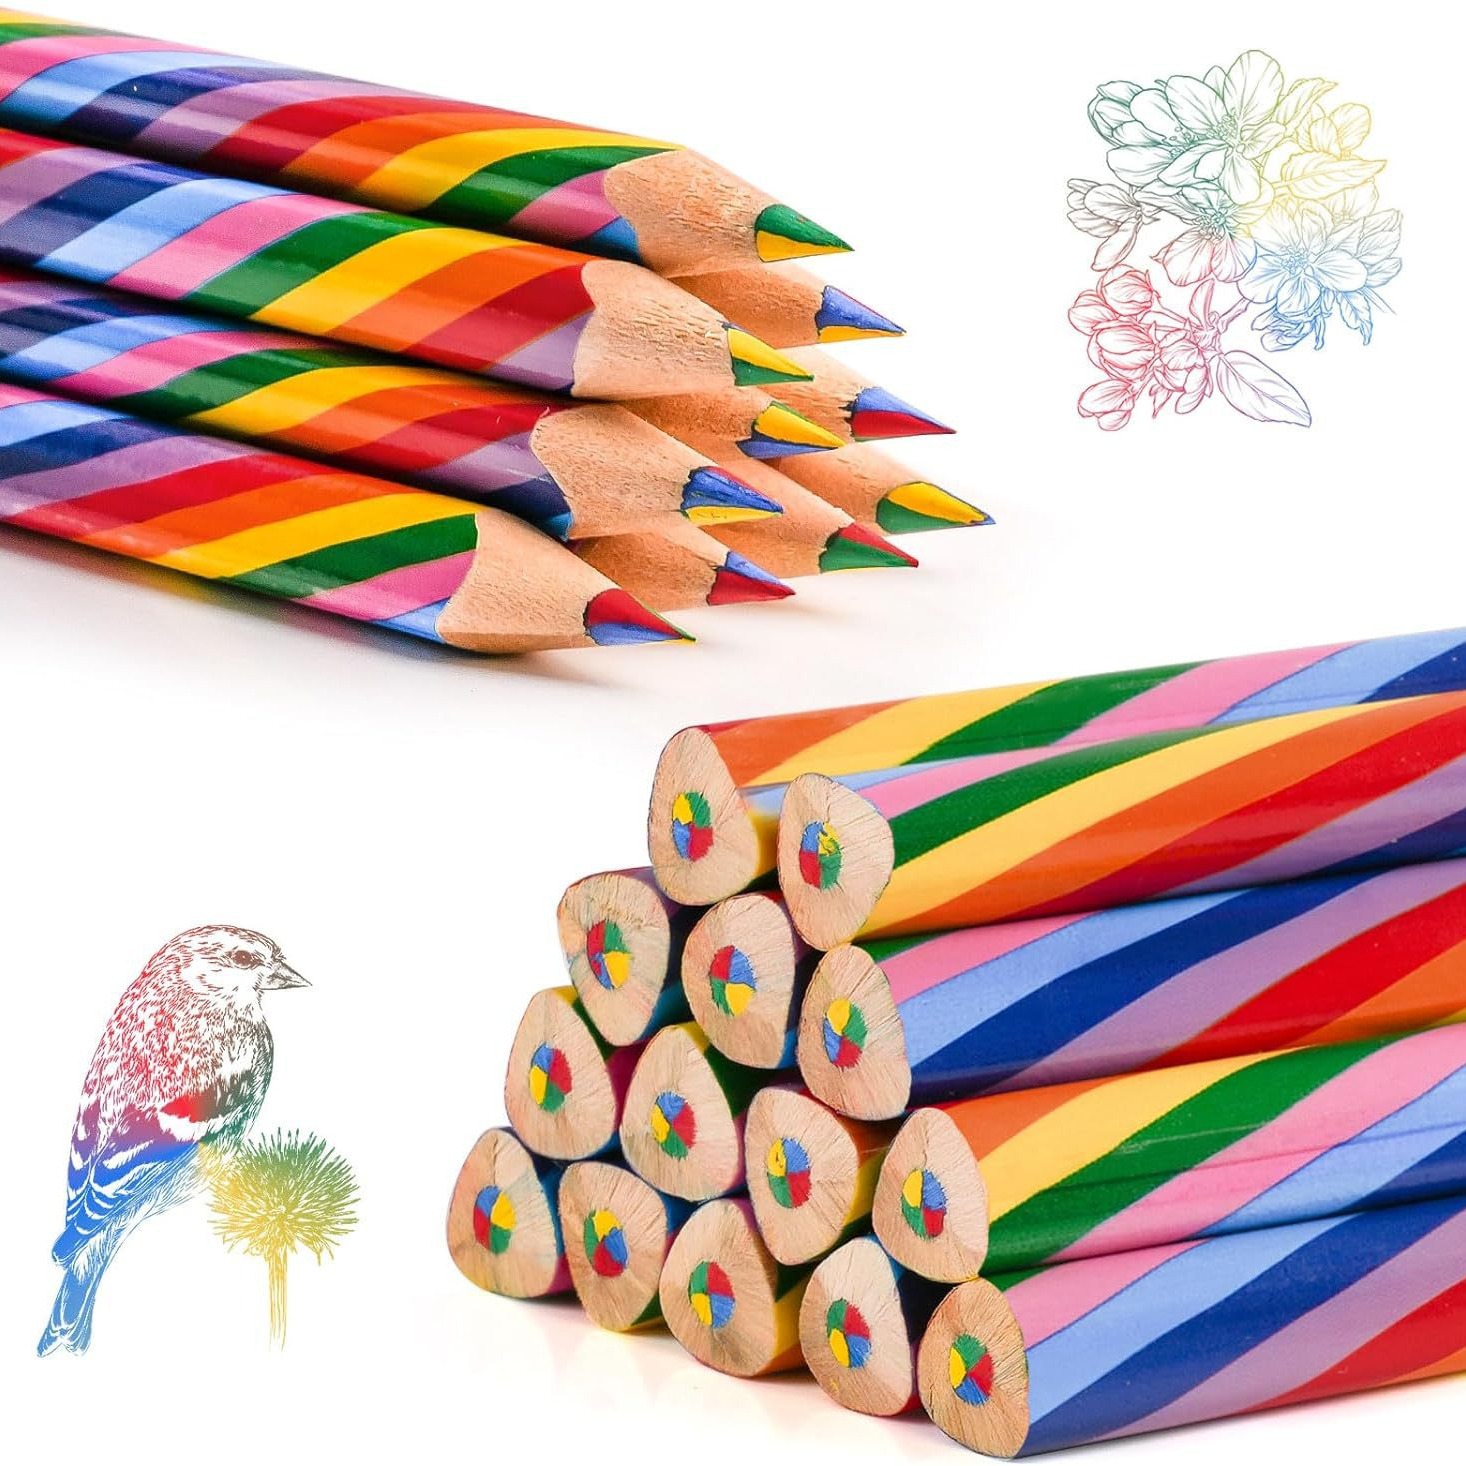 彩虹铅笔四色彩绘笔多色彩彩铅笔渐变色儿童幼儿中小学生男女绘画